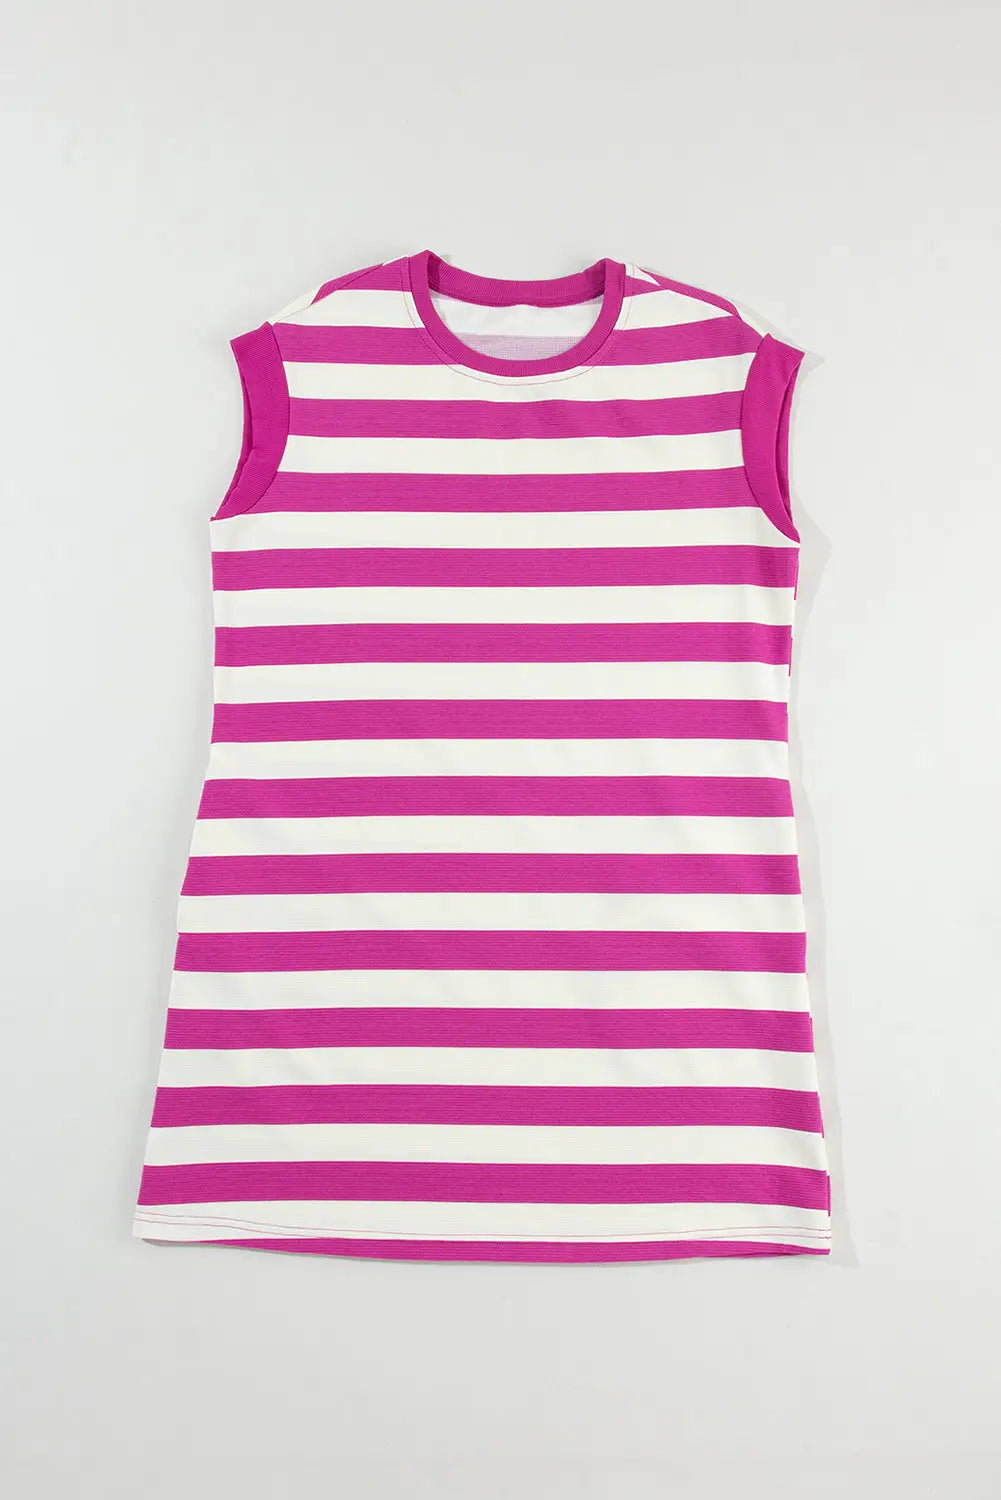 Rose stripe shift t-shirt dress - dresses/t shirt dresses